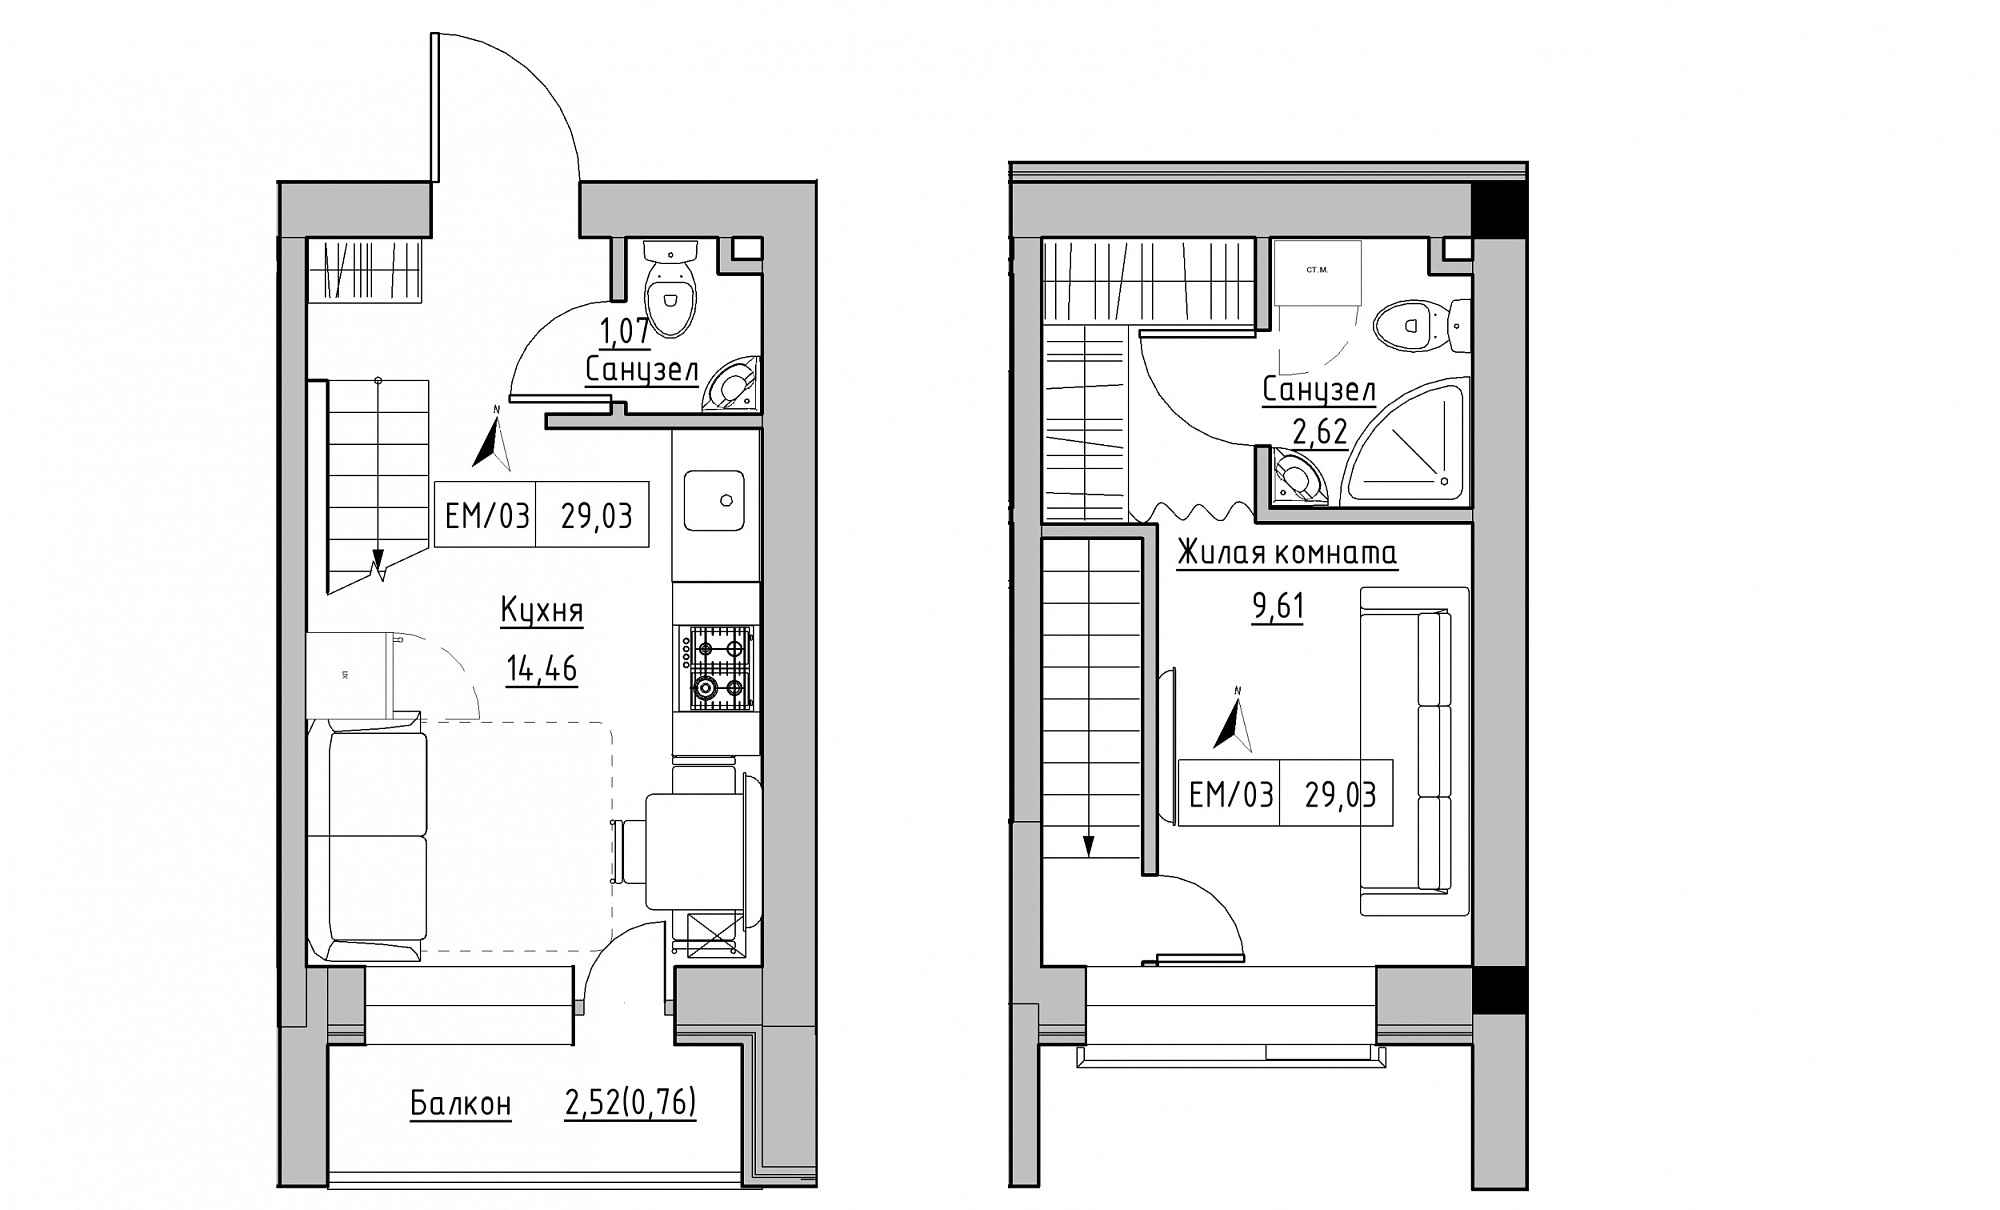 Planning 2-lvl flats area 29.03m2, KS-015-05/0013.